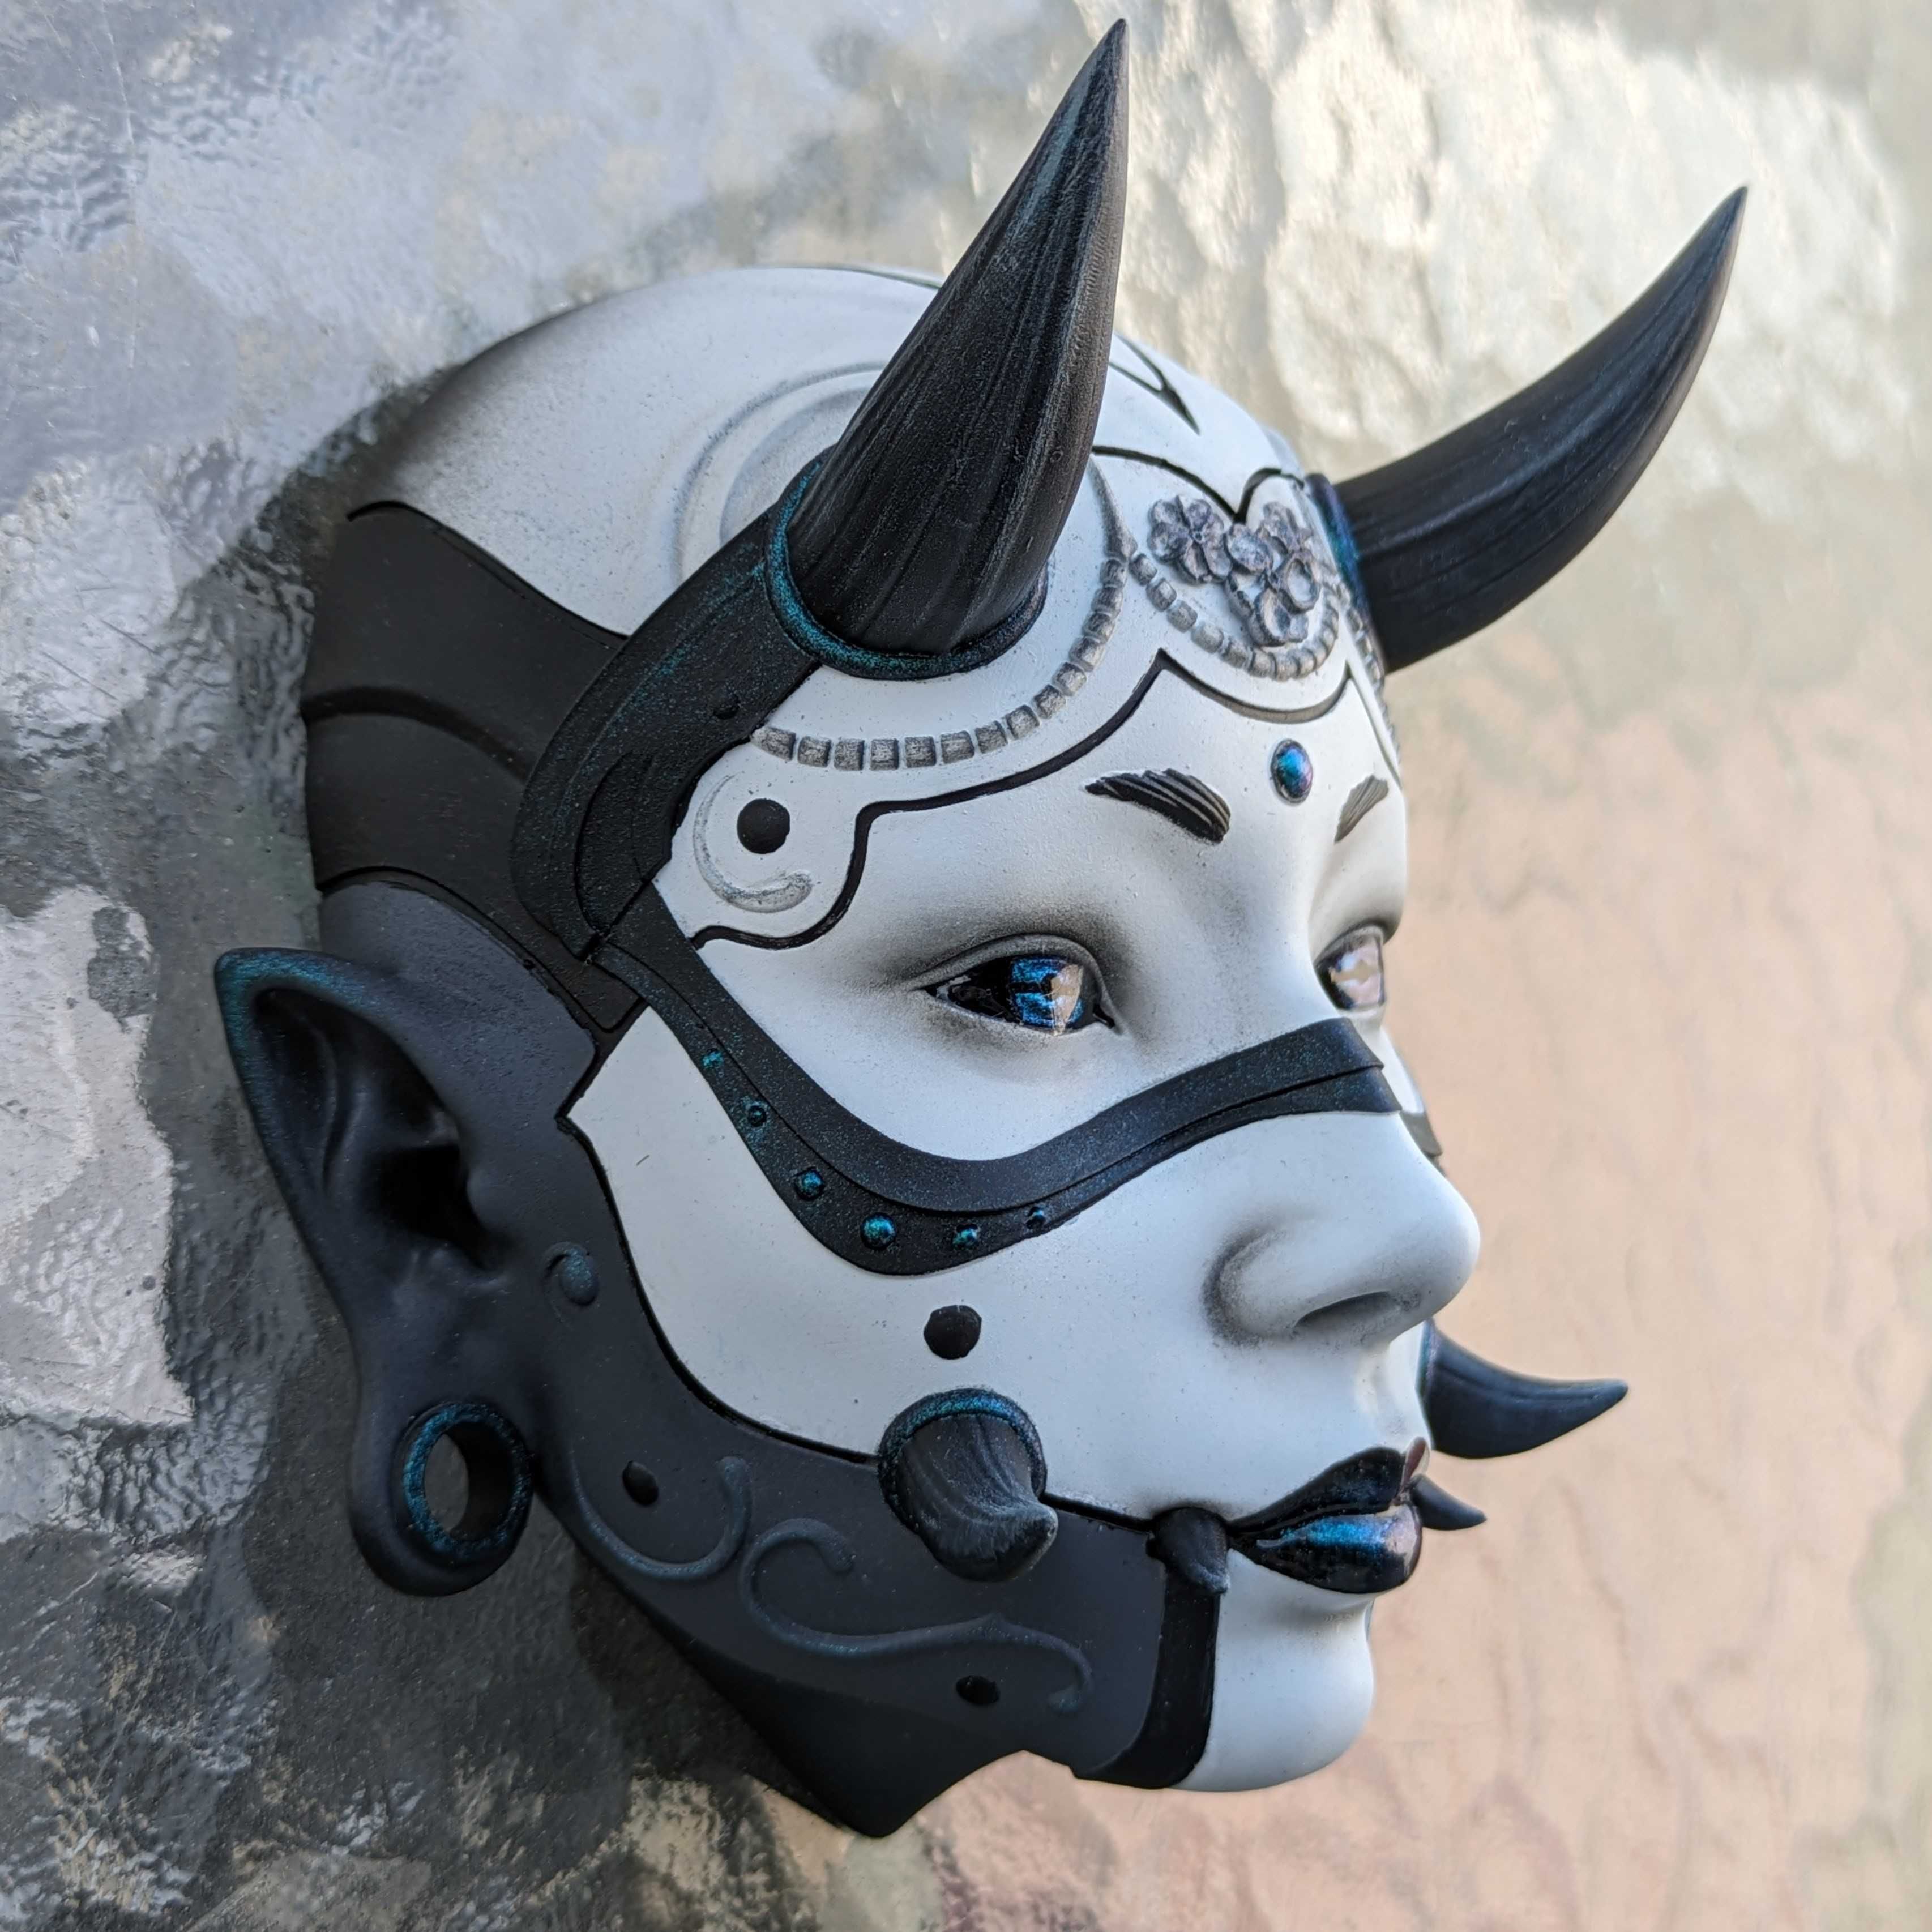 Maska Hannya na ścianie. Druk 3D, malowanie ręczne